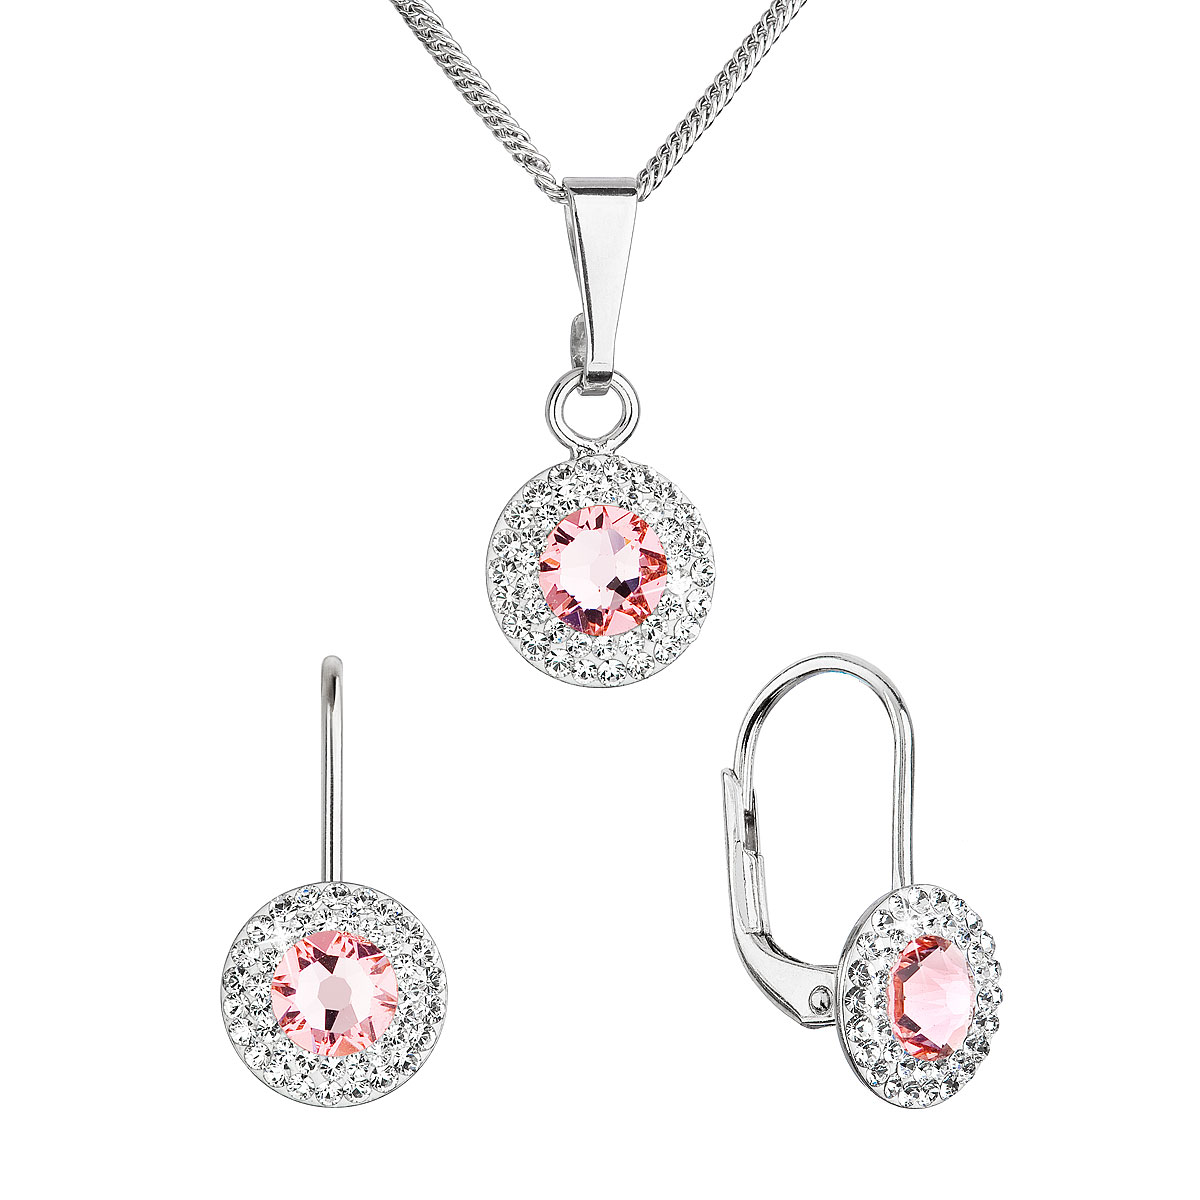 Evolution Group Sada šperků s krystaly Swarovski náušnice a přívěsek růžové kulaté 39109.3 lt. rose